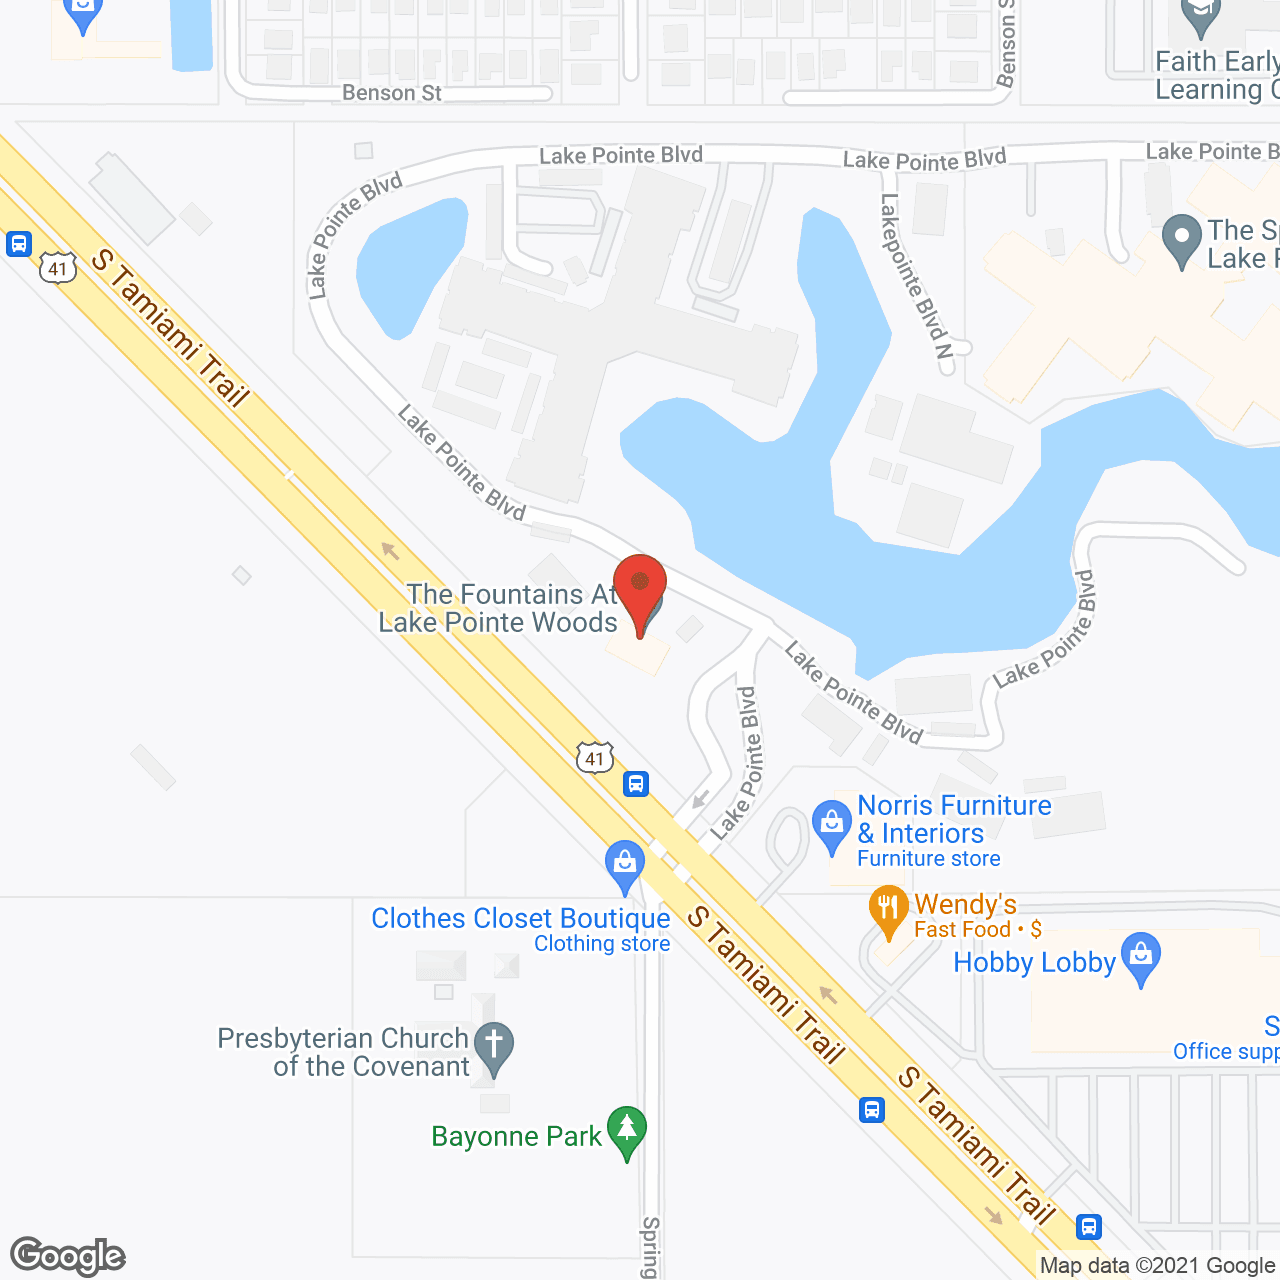 Elance at Sarasota in google map